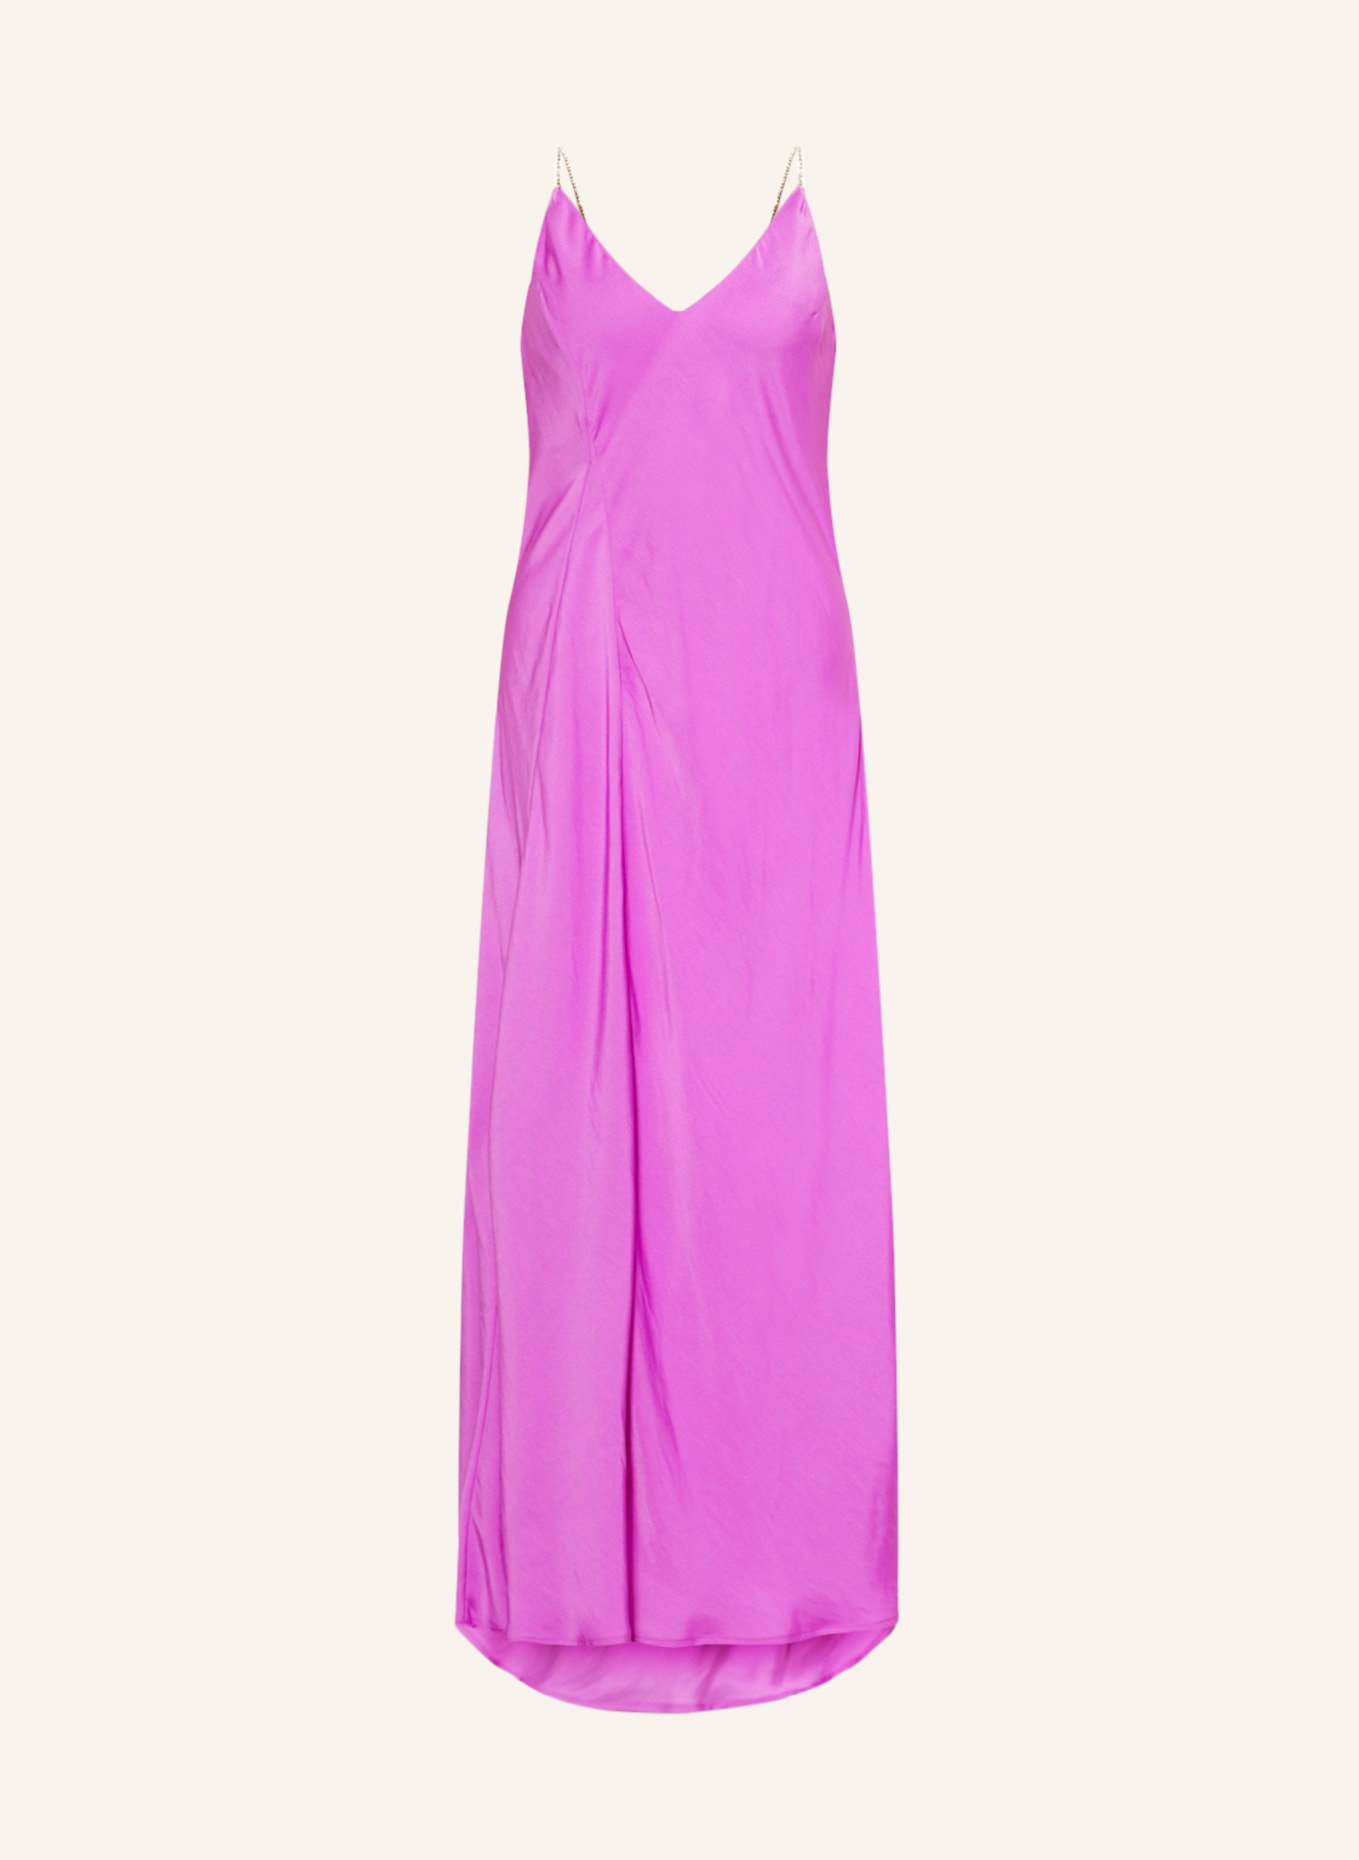 ESSENTIEL ANTWERP Kleid DAPPLE mit Schmucksteinen, Farbe: PINK (Bild 1)